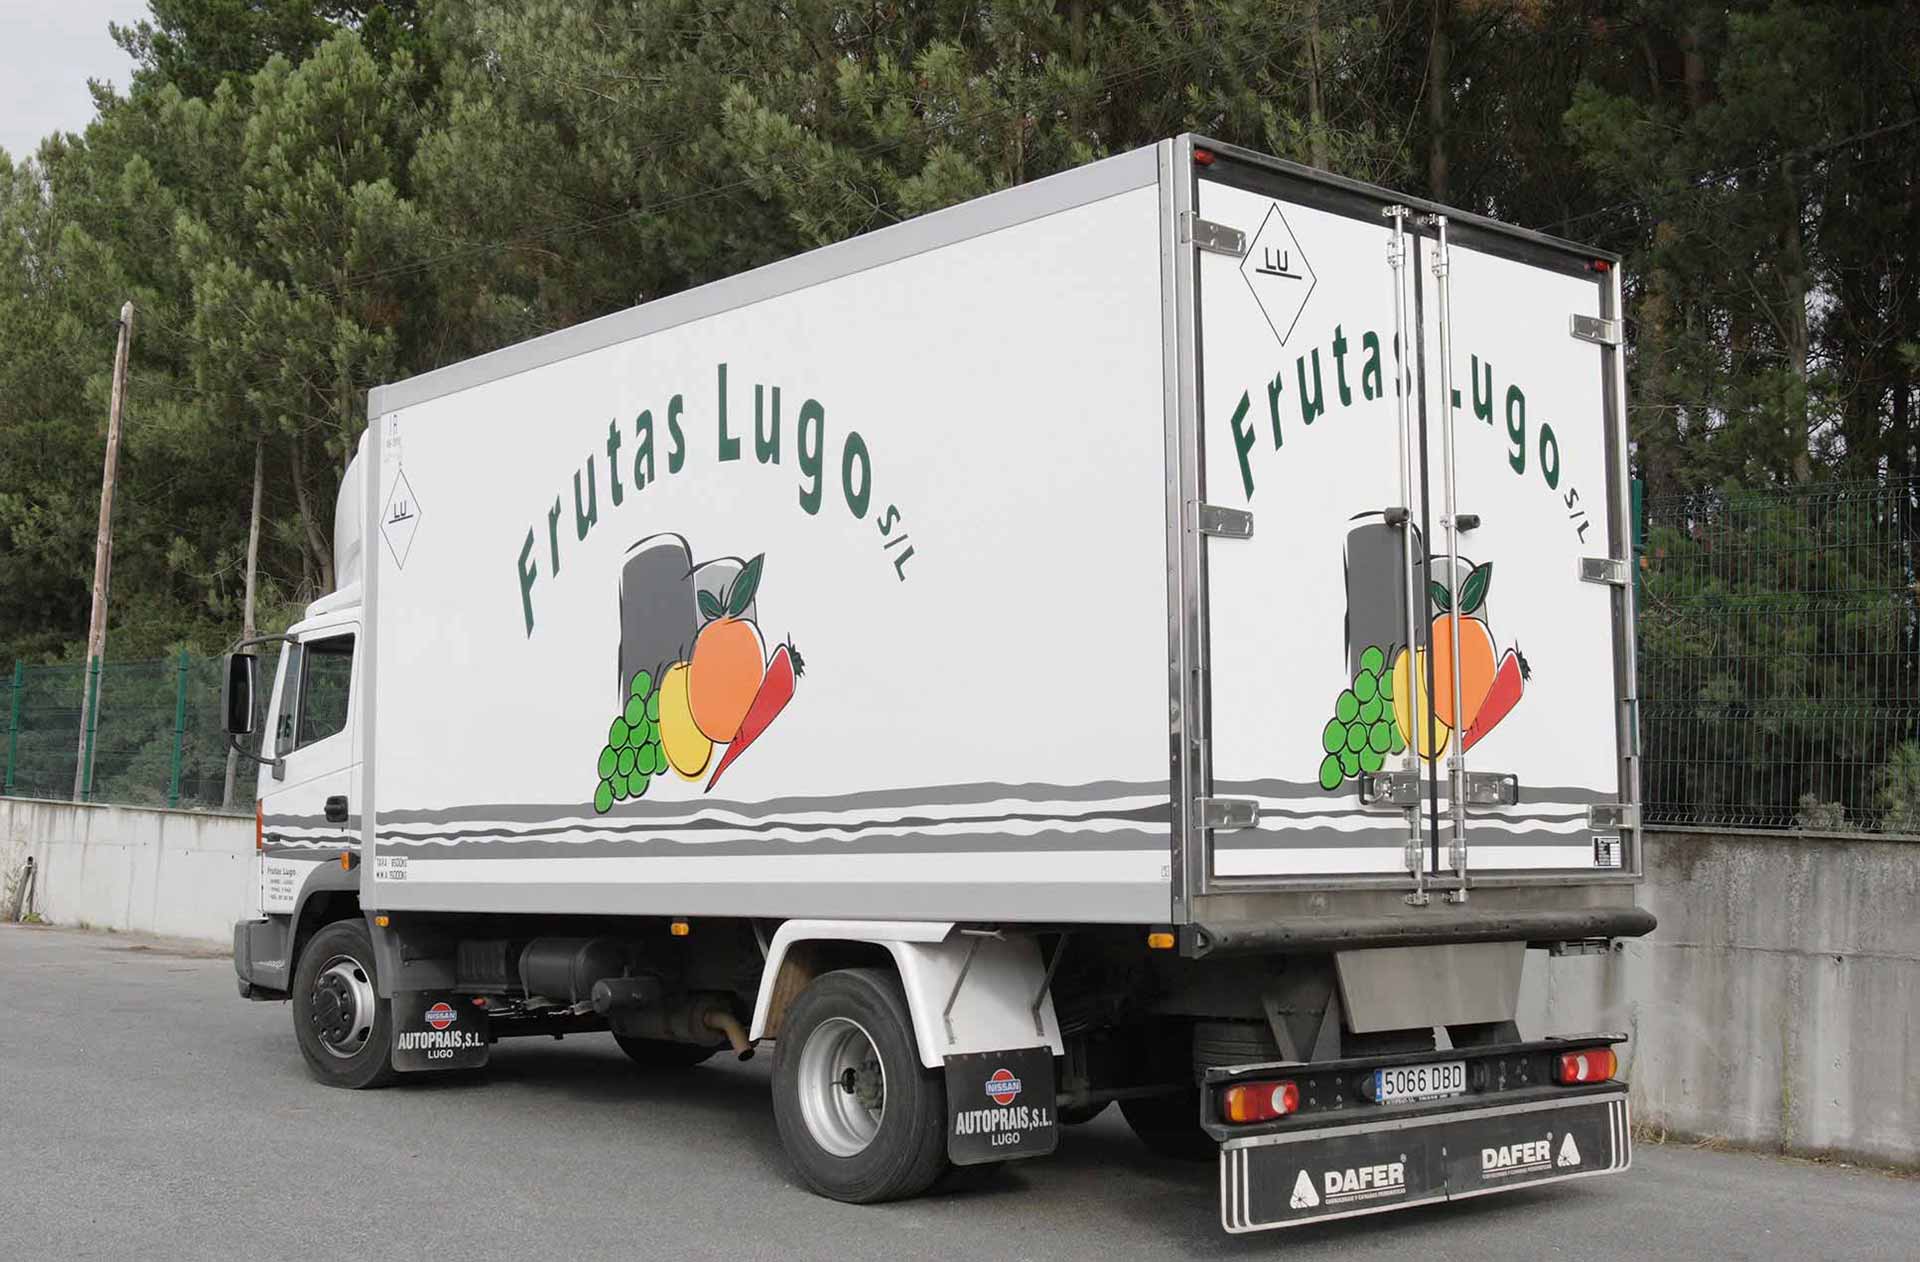 camion-frutas-lugo11